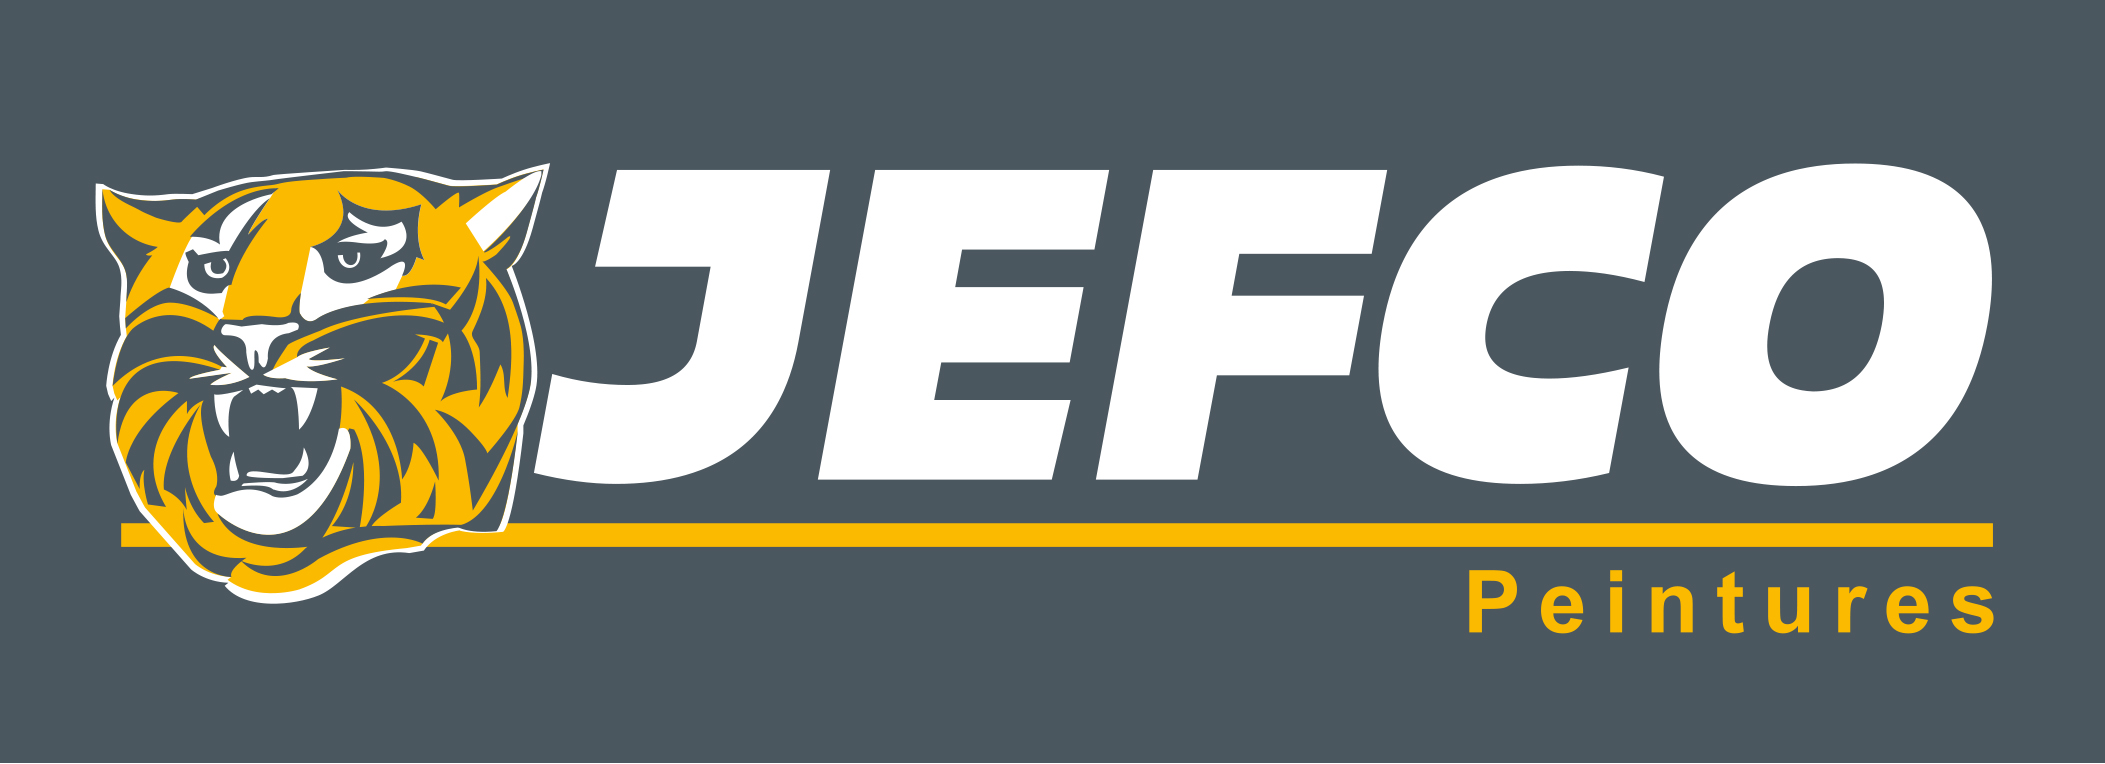 logo partenaire jefco